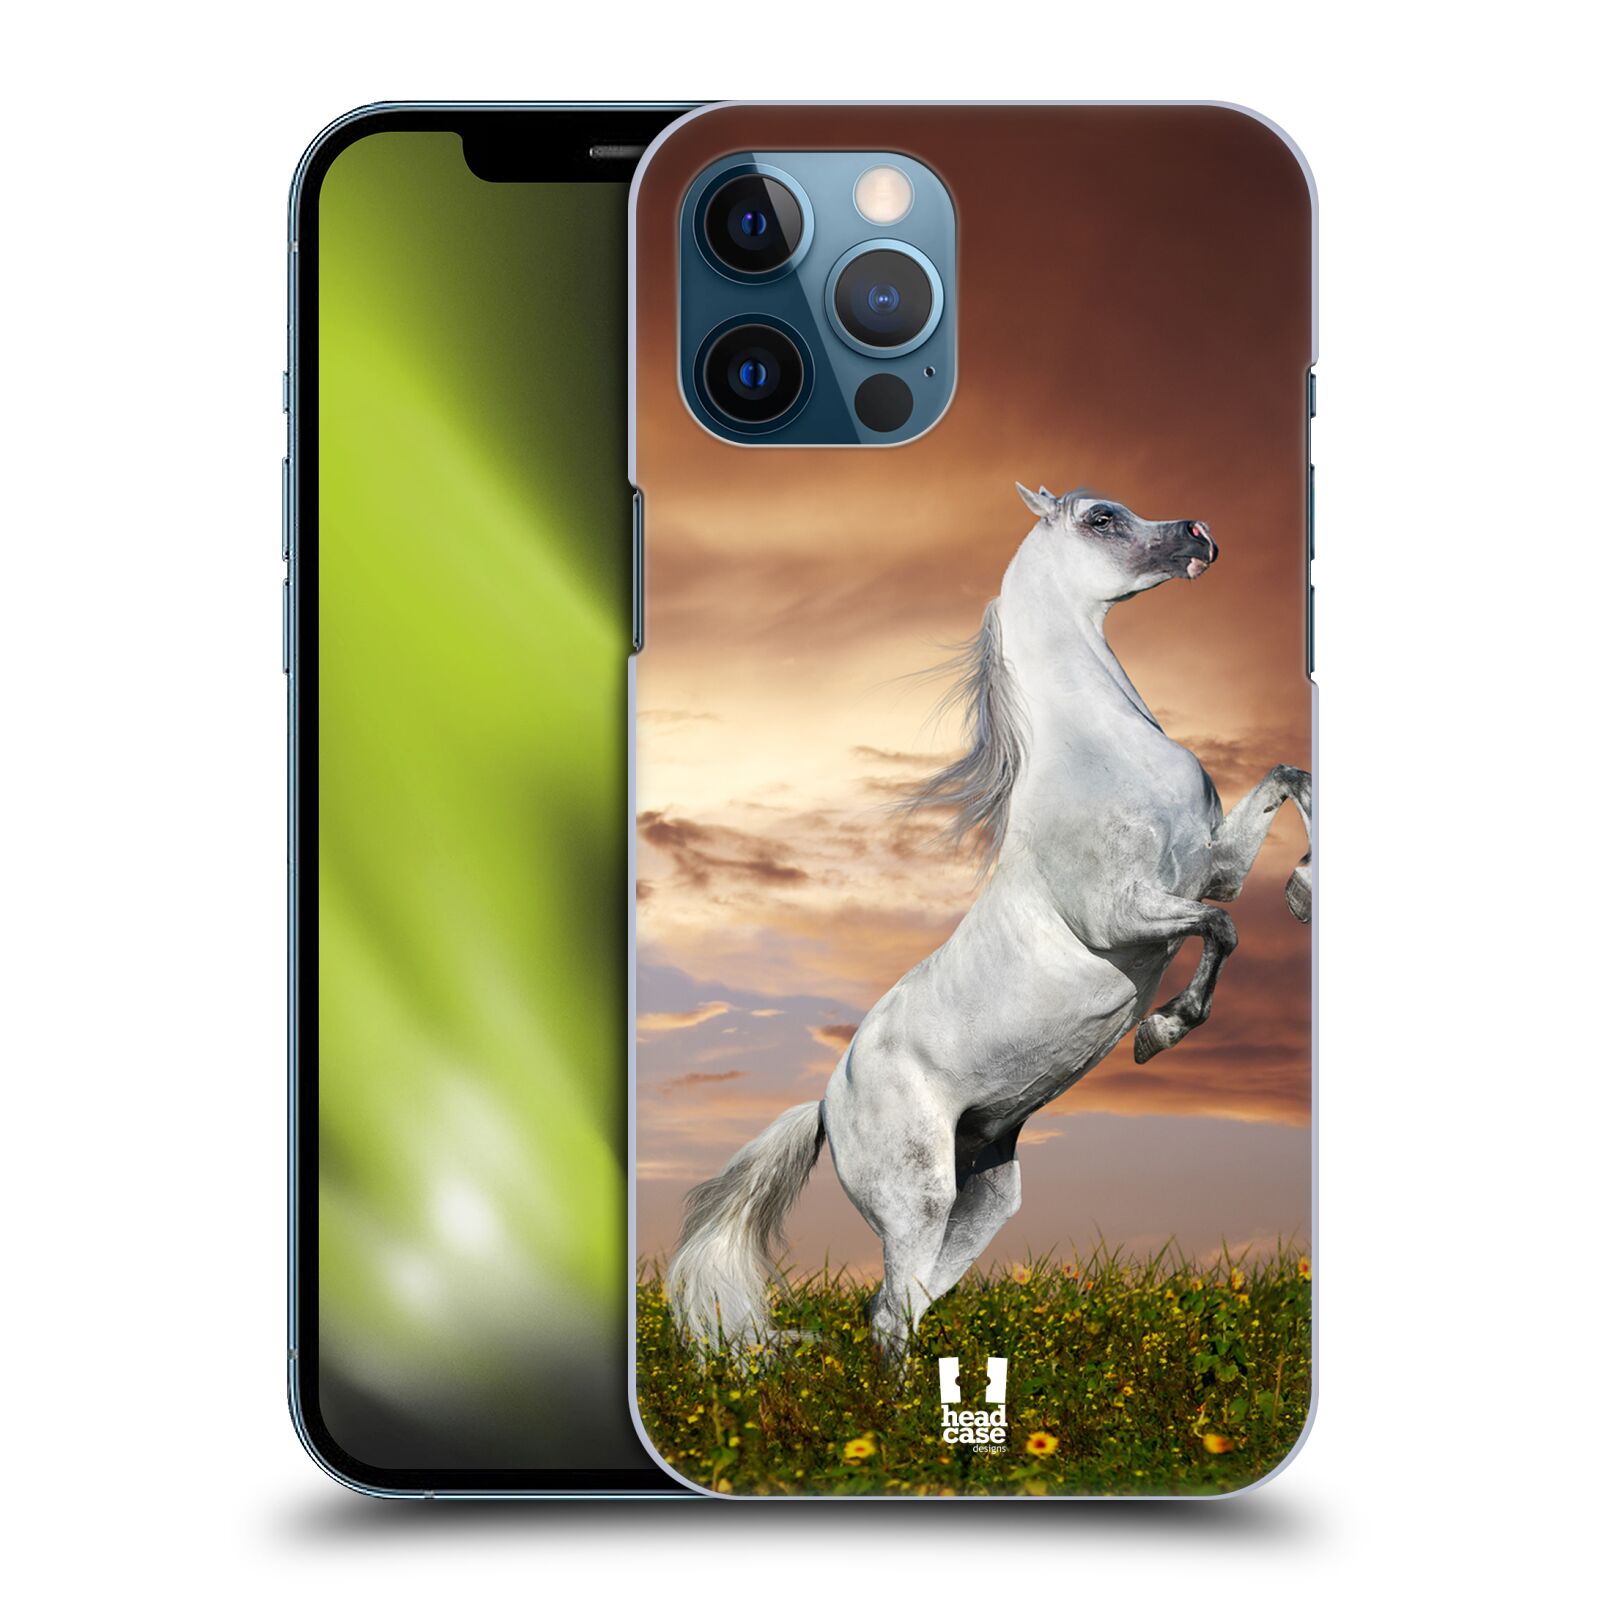 Zadní obal pro mobil Apple iPhone 12 PRO MAX - HEAD CASE - Svět zvířat divoký kůň